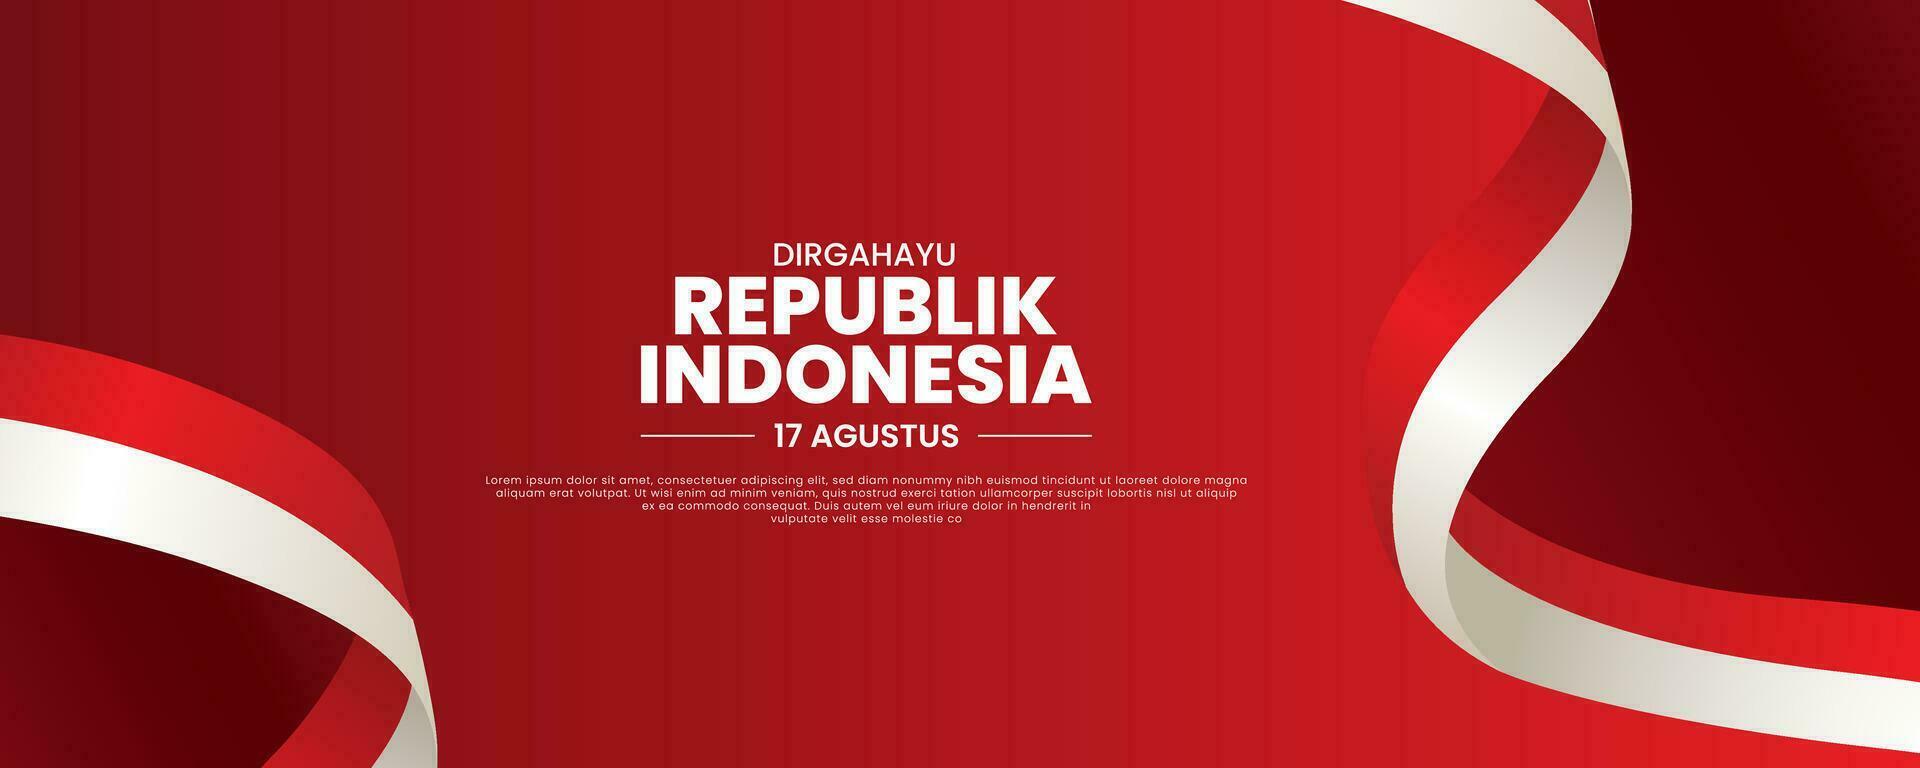 paisaje bandera modelo de contento indonesio independencia día, dirgahayu republik Indonesia, 17 agosto 1945. sentido largo En Vivo Indonesia, vector ilustración.